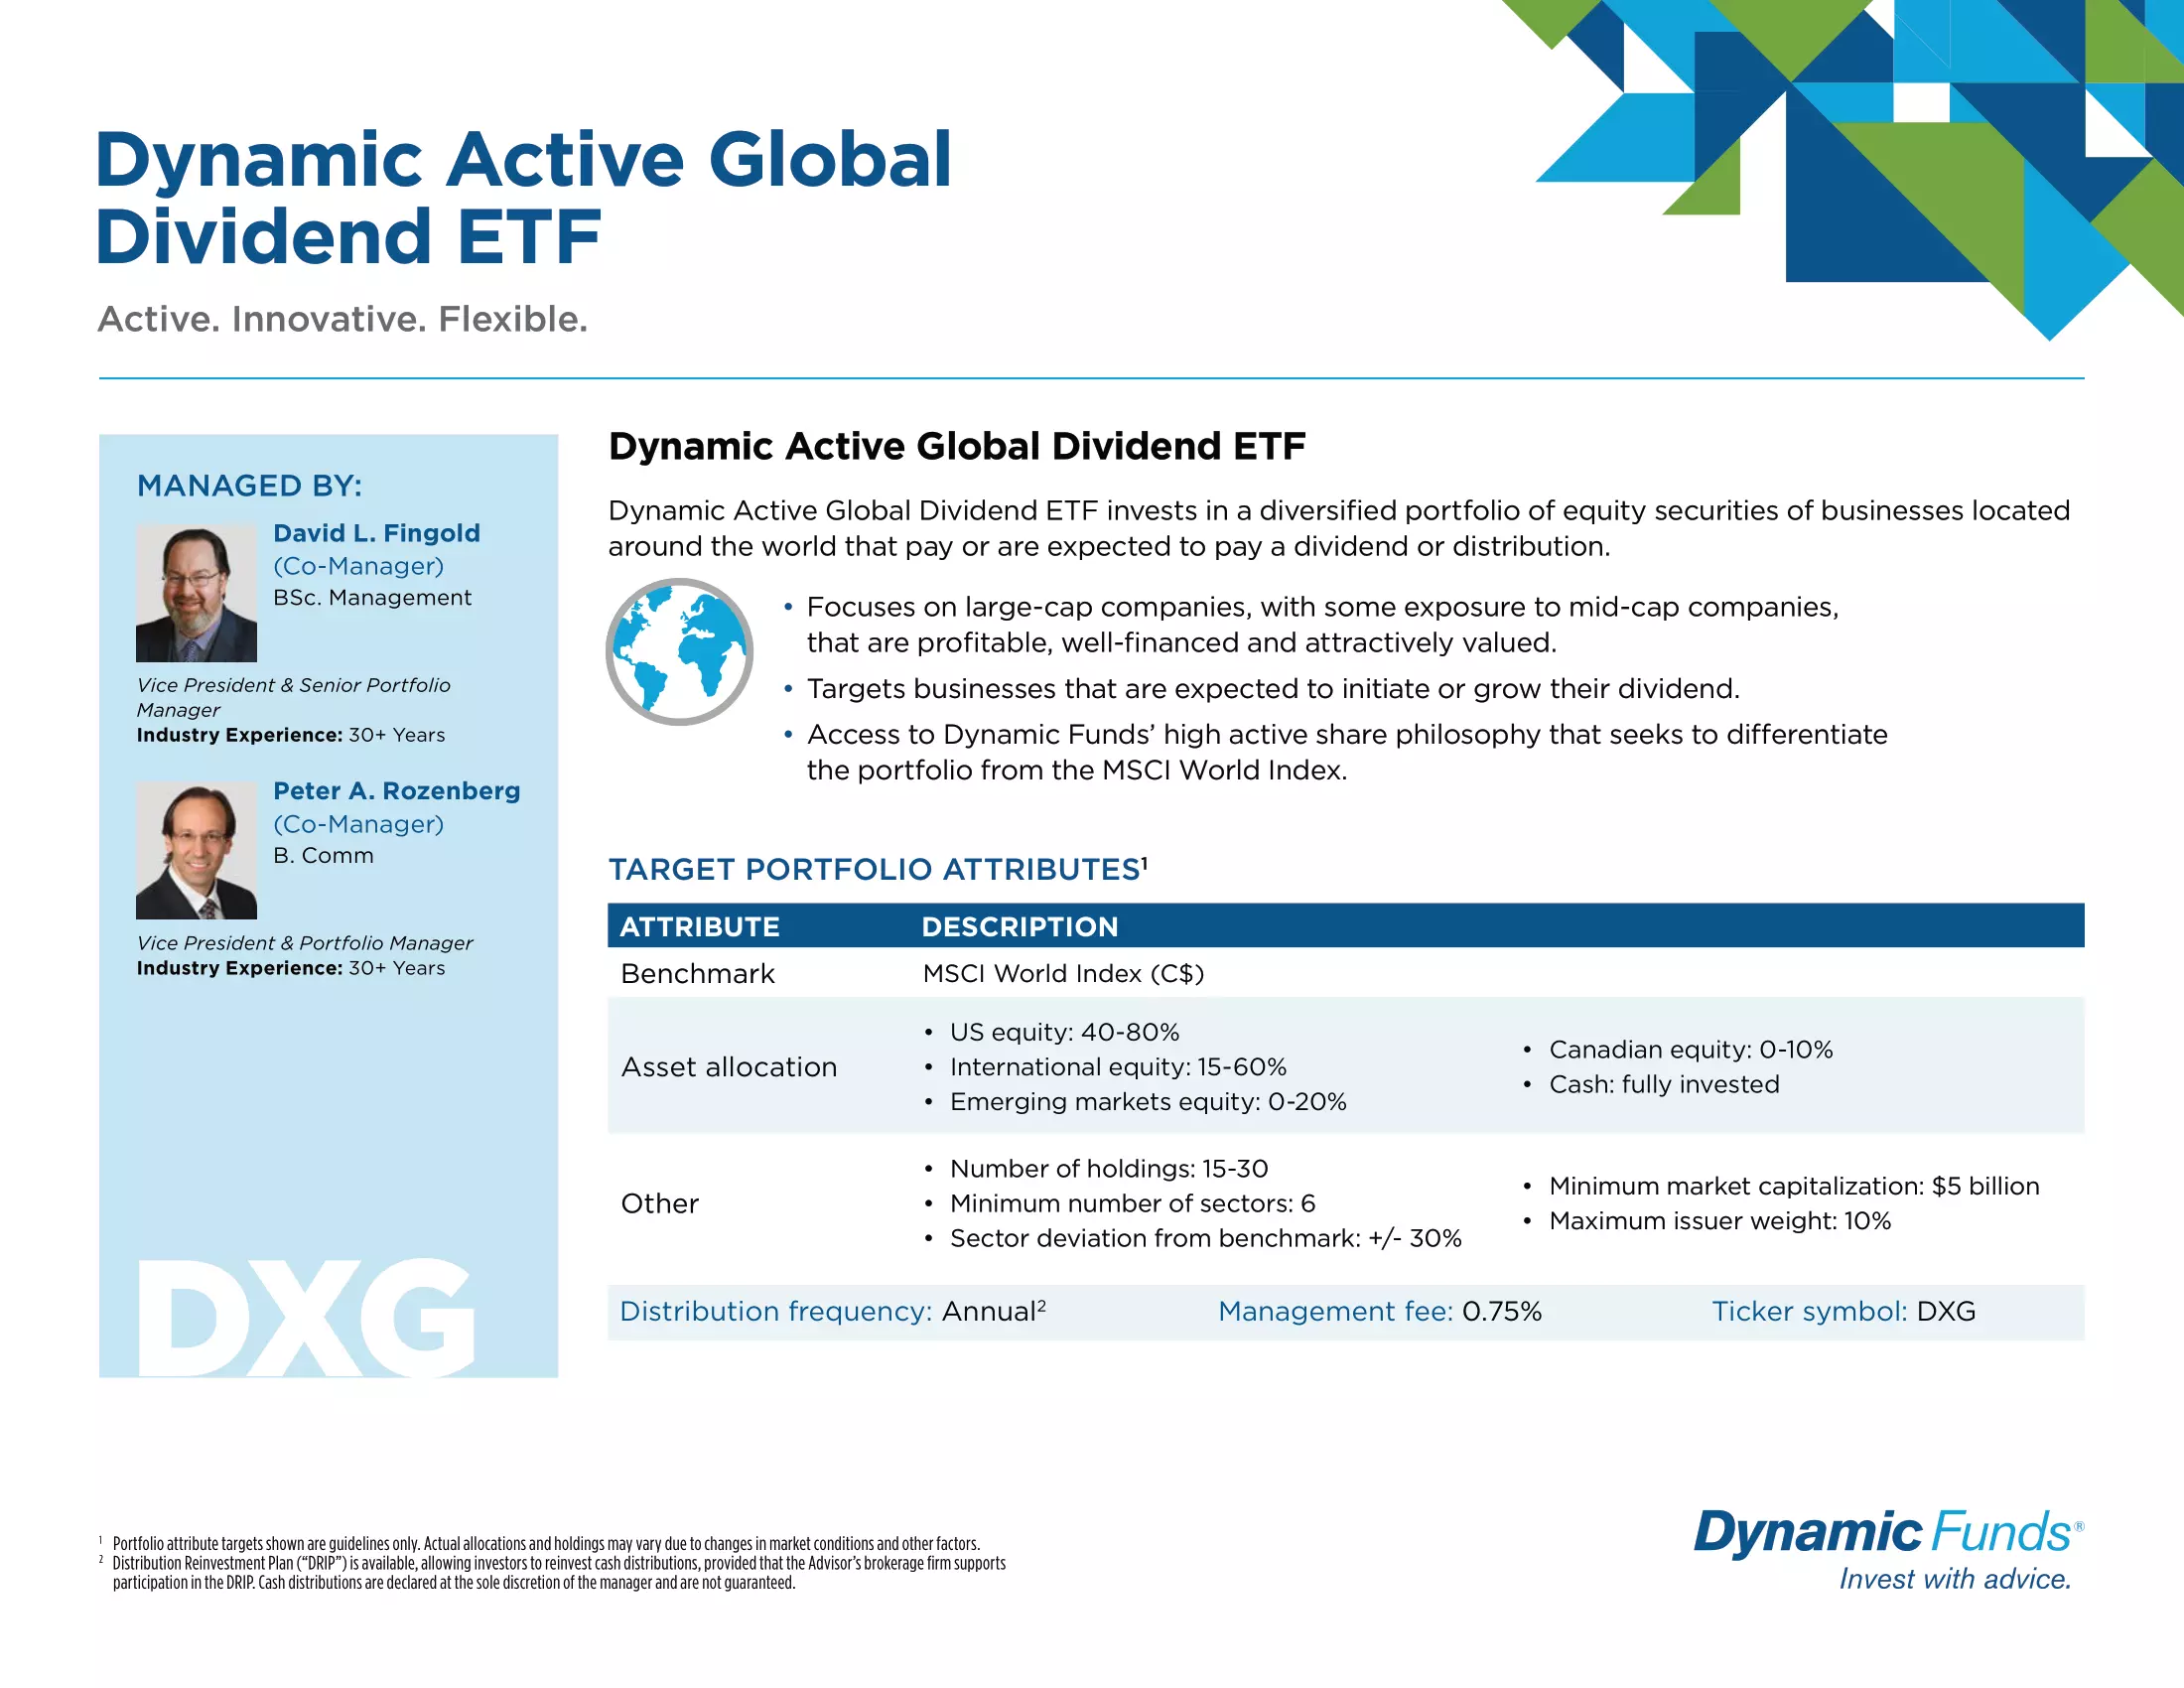 DXG: Dynamic Active Global Dividend ETF